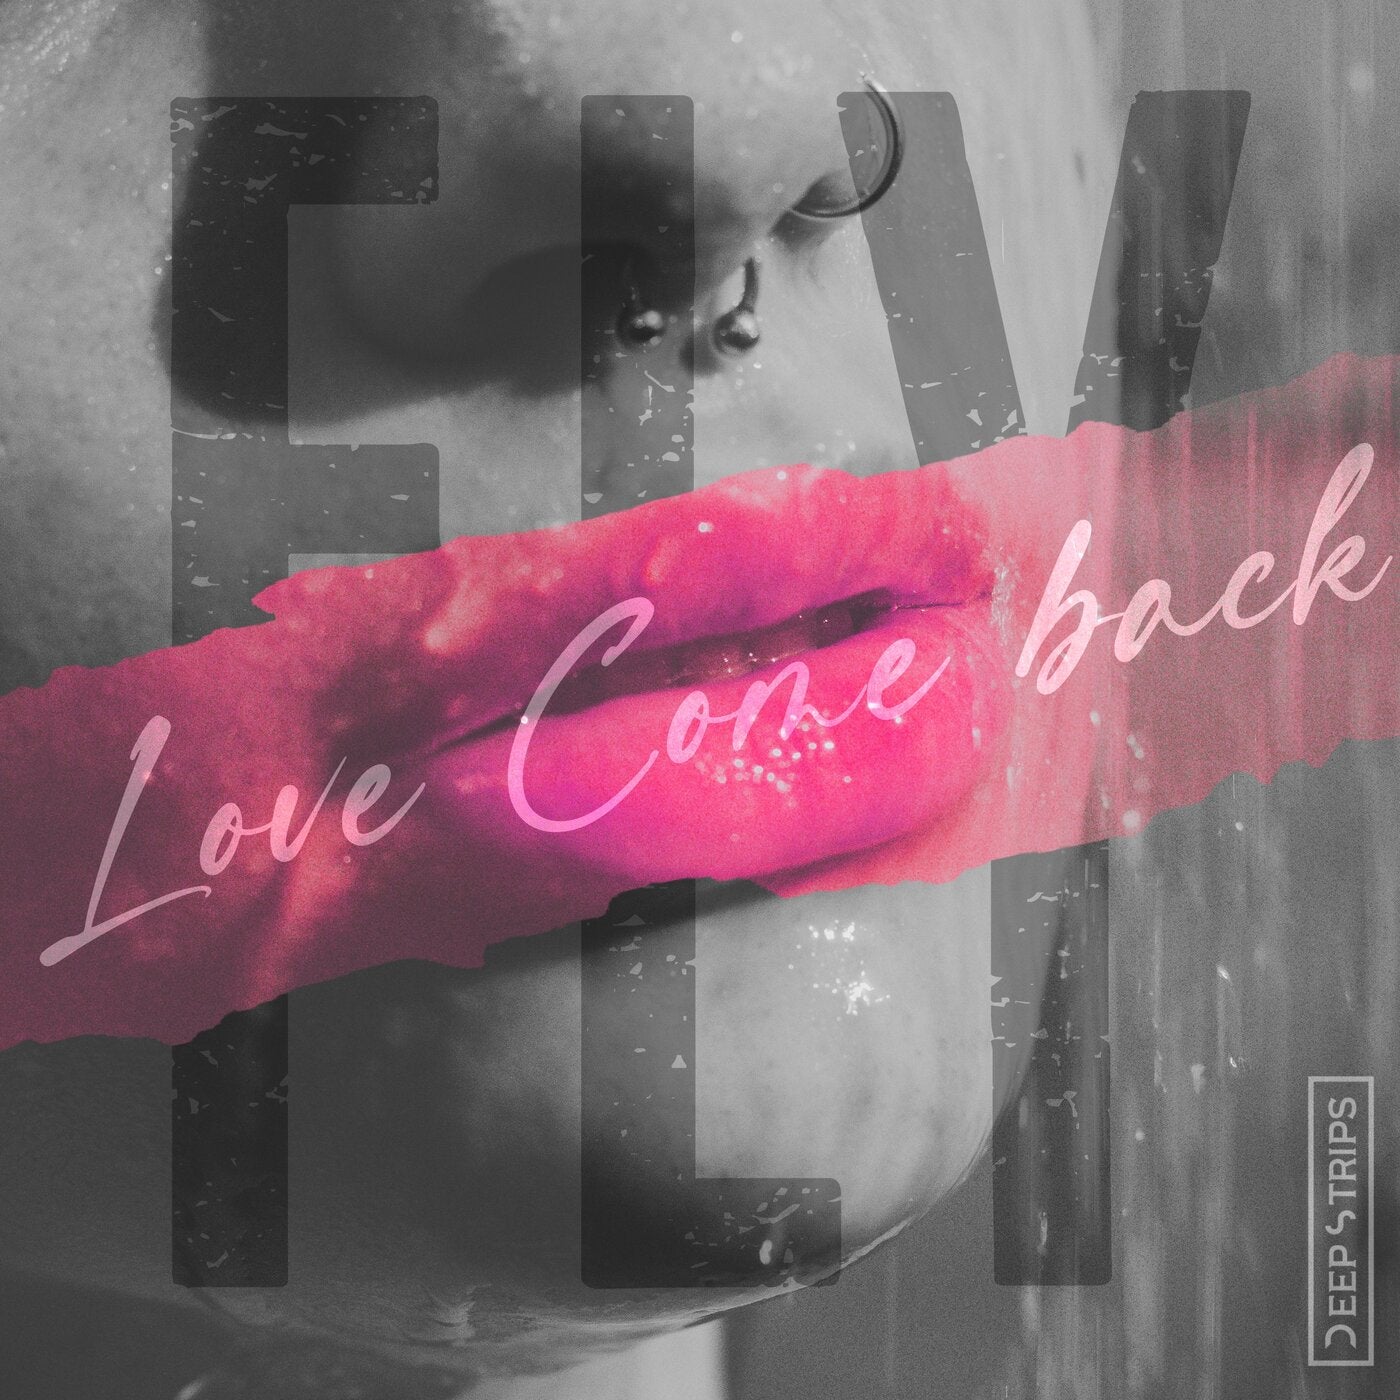 Love Come Back